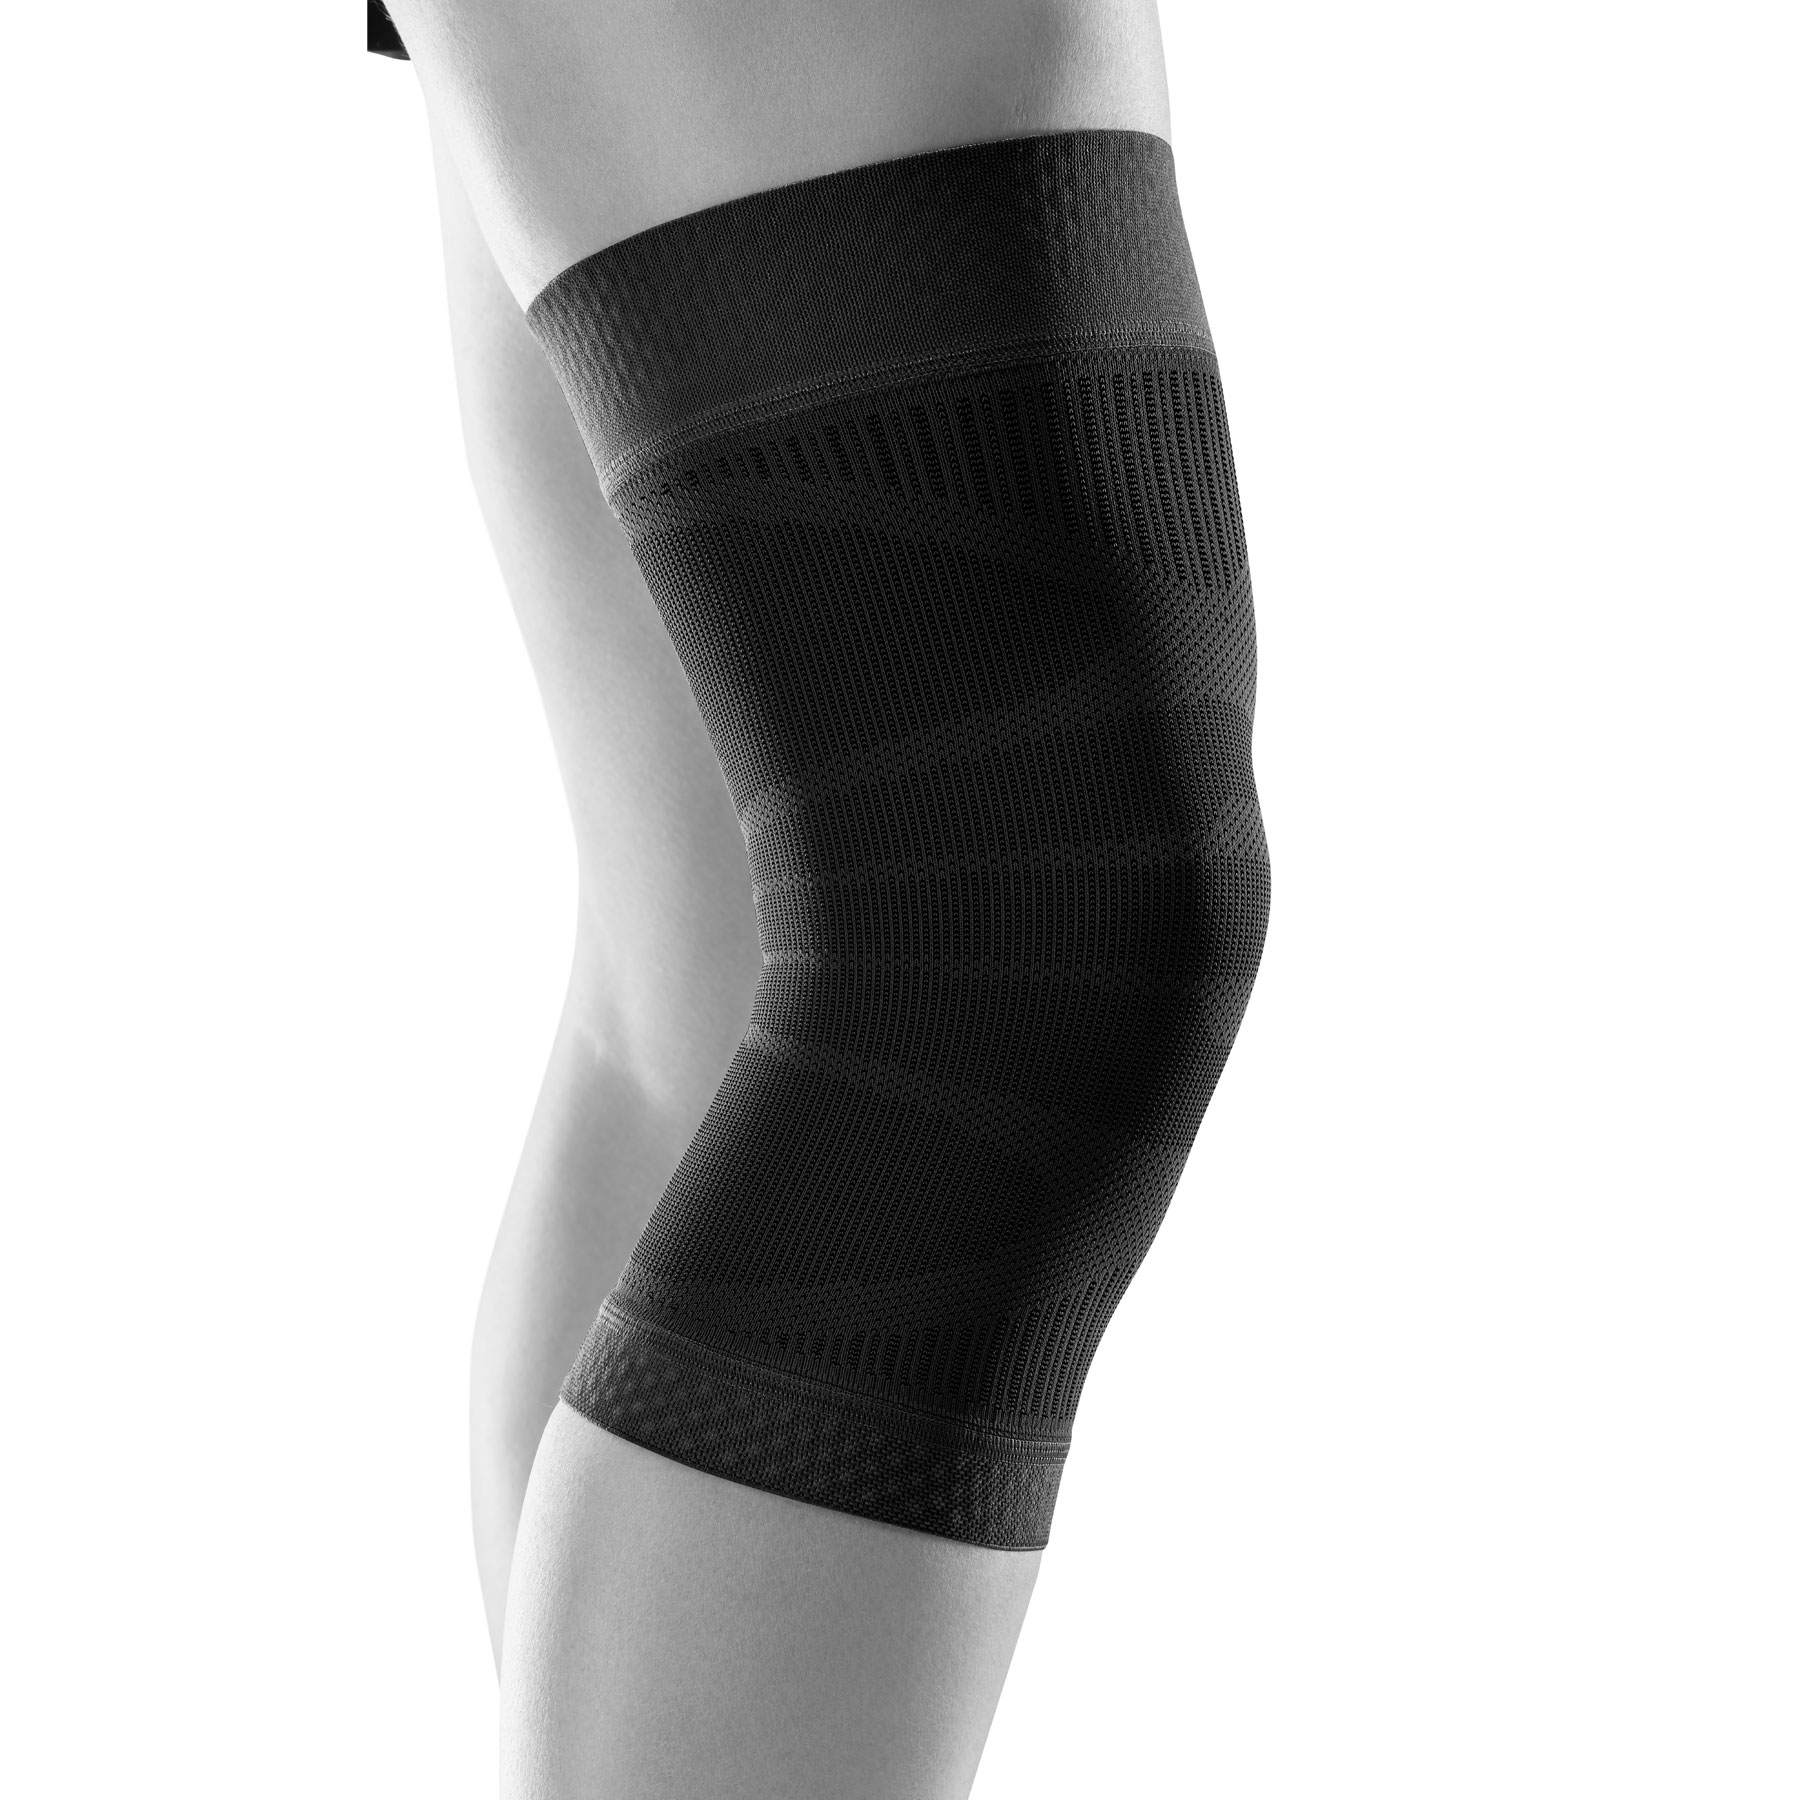 Bauerfeind Sports Compression Knee Support - black